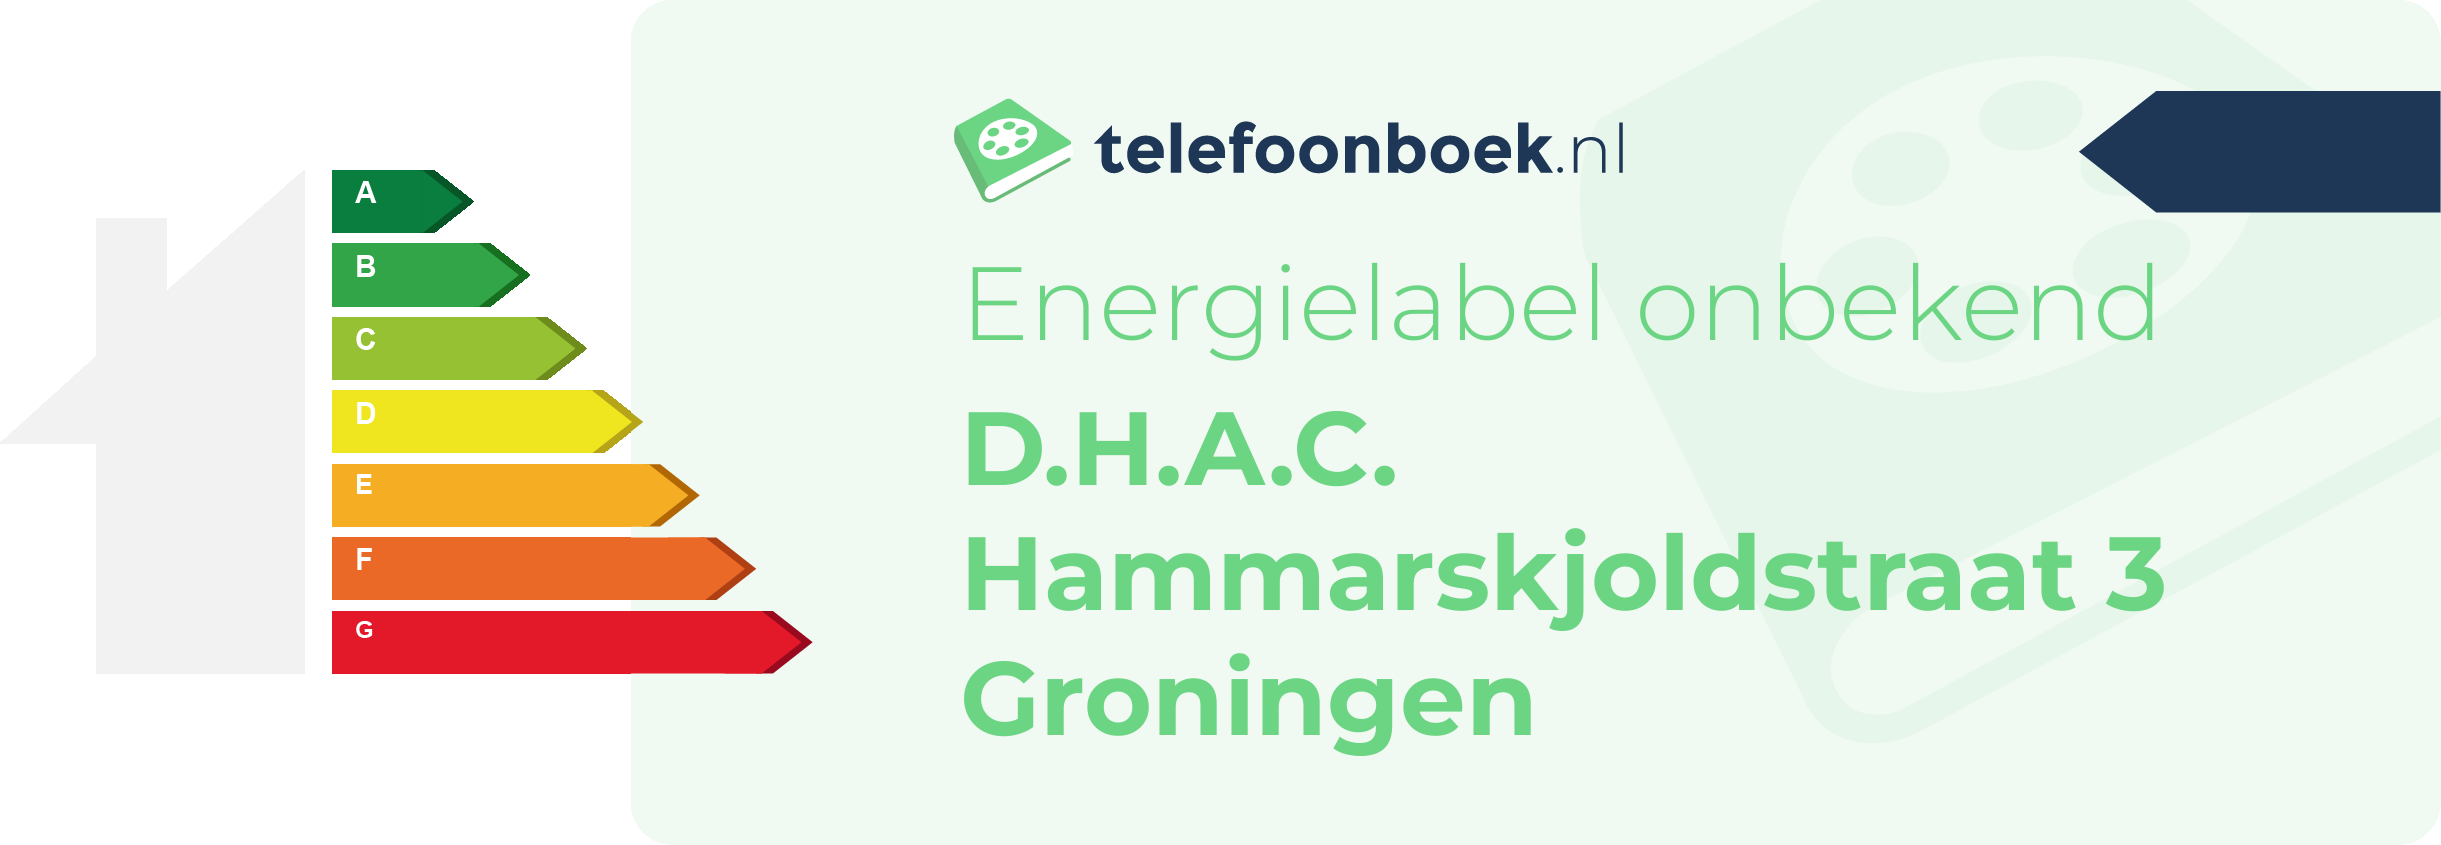 Energielabel D.H.A.C. Hammarskjoldstraat 3 Groningen